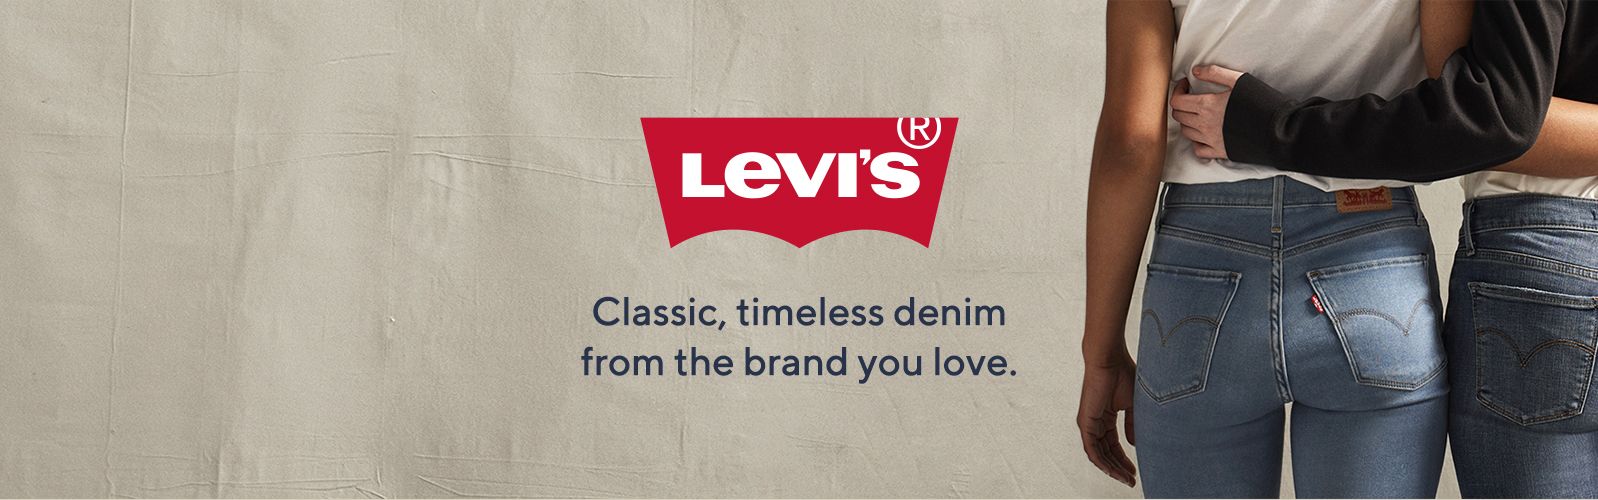 levi's brand